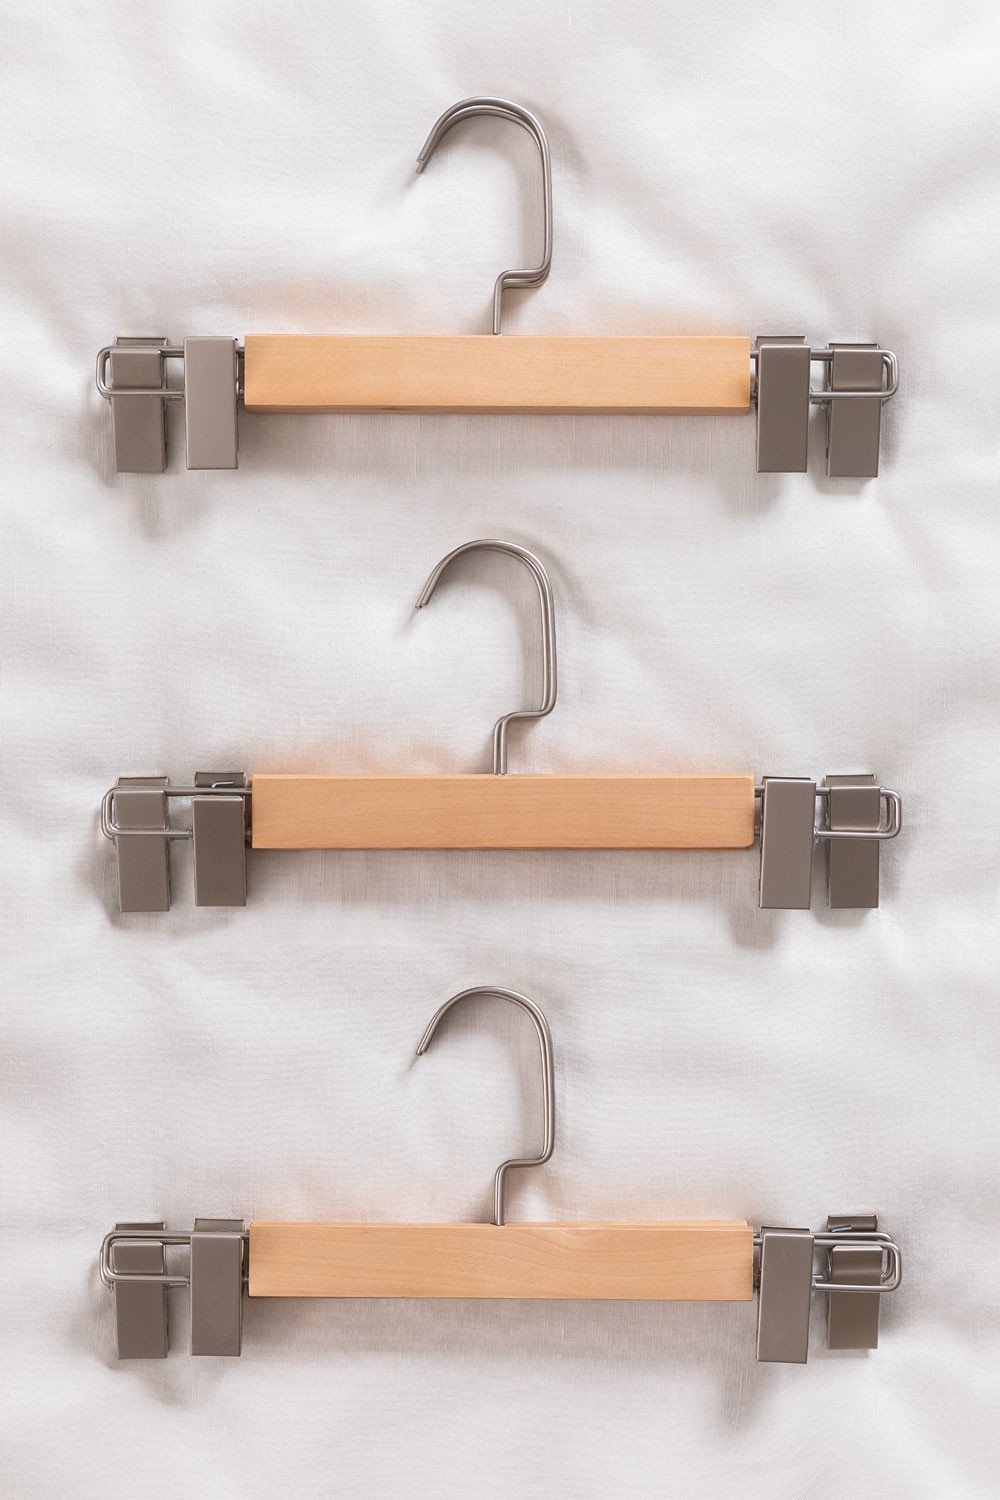 Set van 6 houten kledinghangers met clip Rita , galerij beeld 1